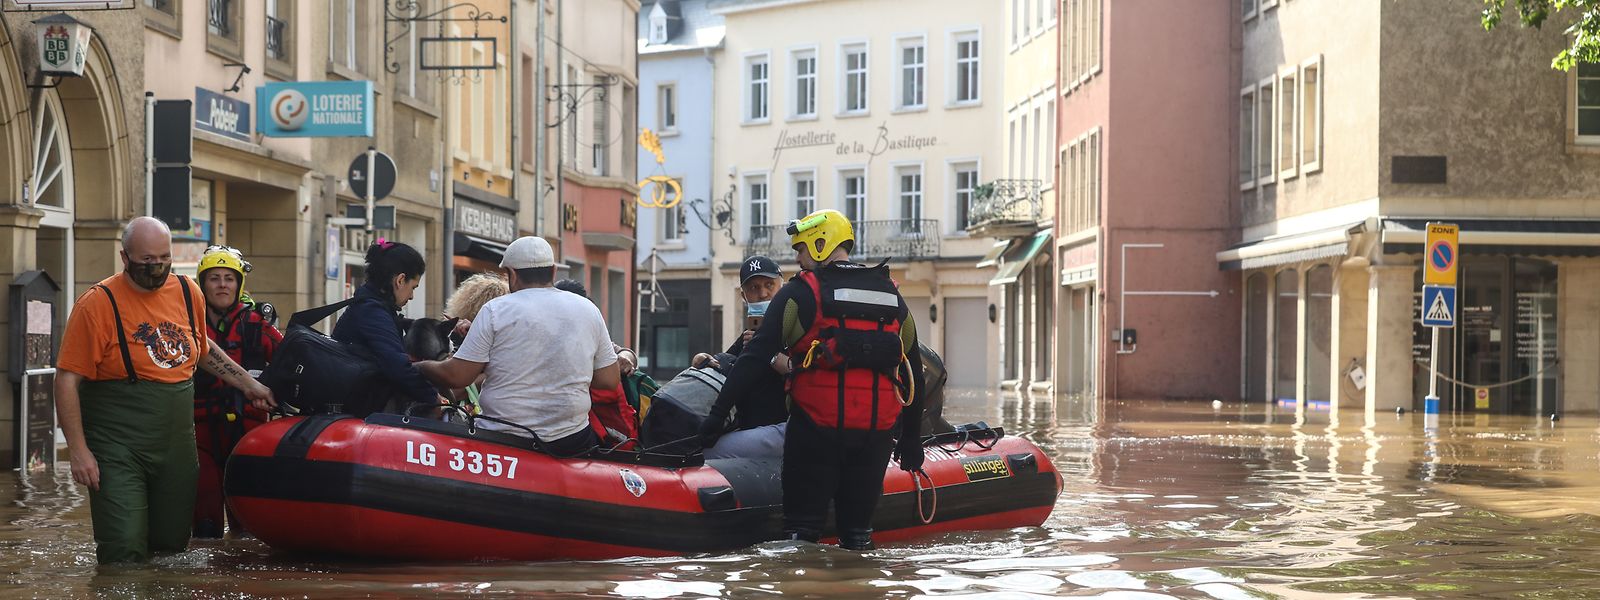 Moradores são resgatados em Echternach depois das inundações, em julho de 2021